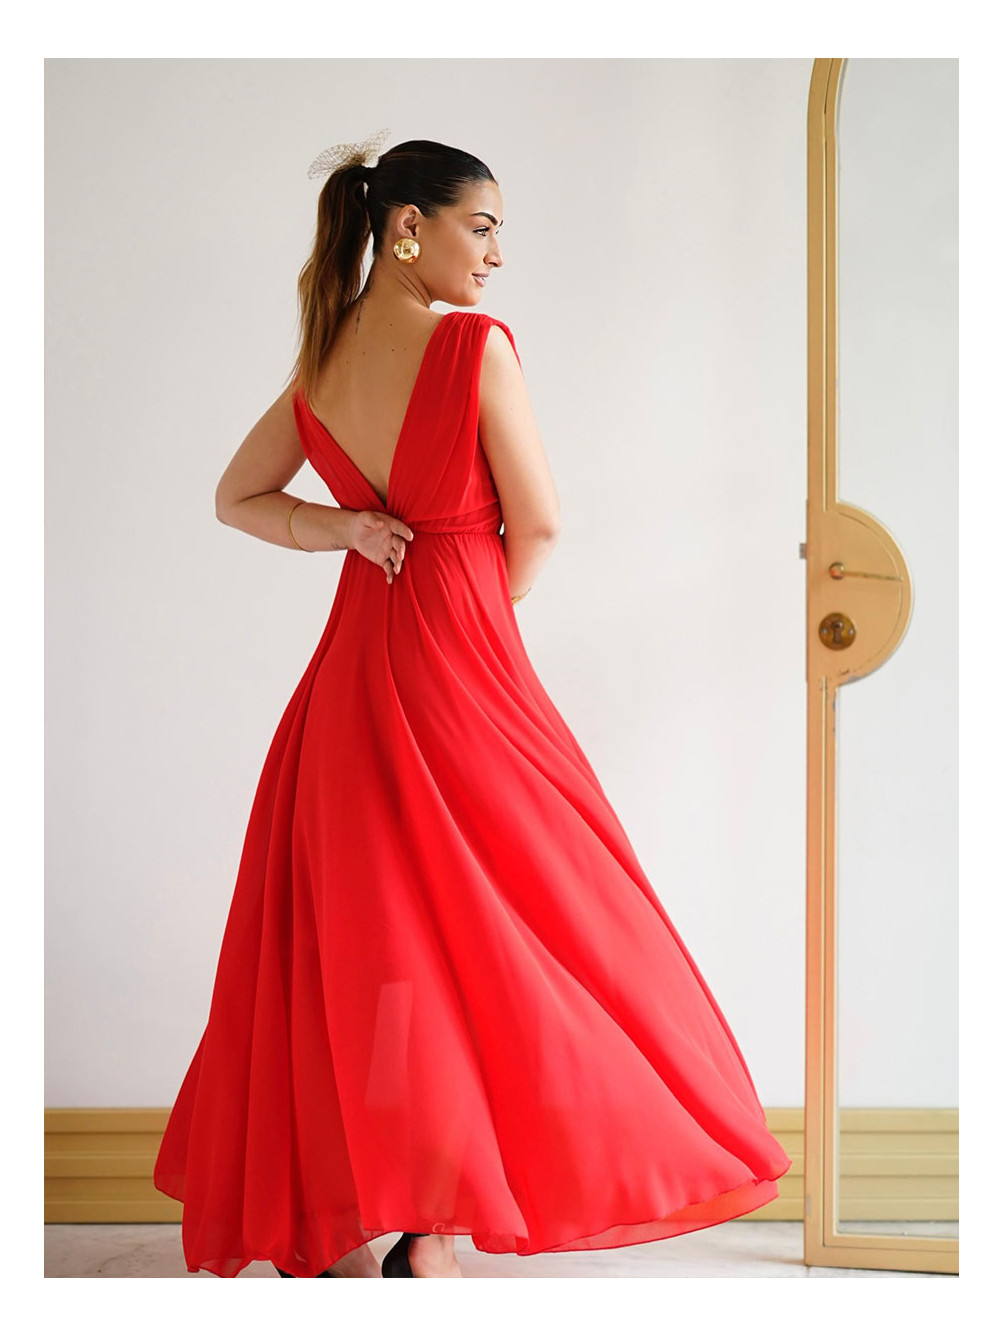 Vestido Largo Rosalie, Vestido Rojo Largo, Vestido Dama de Honor, Mariquita Trasquilá